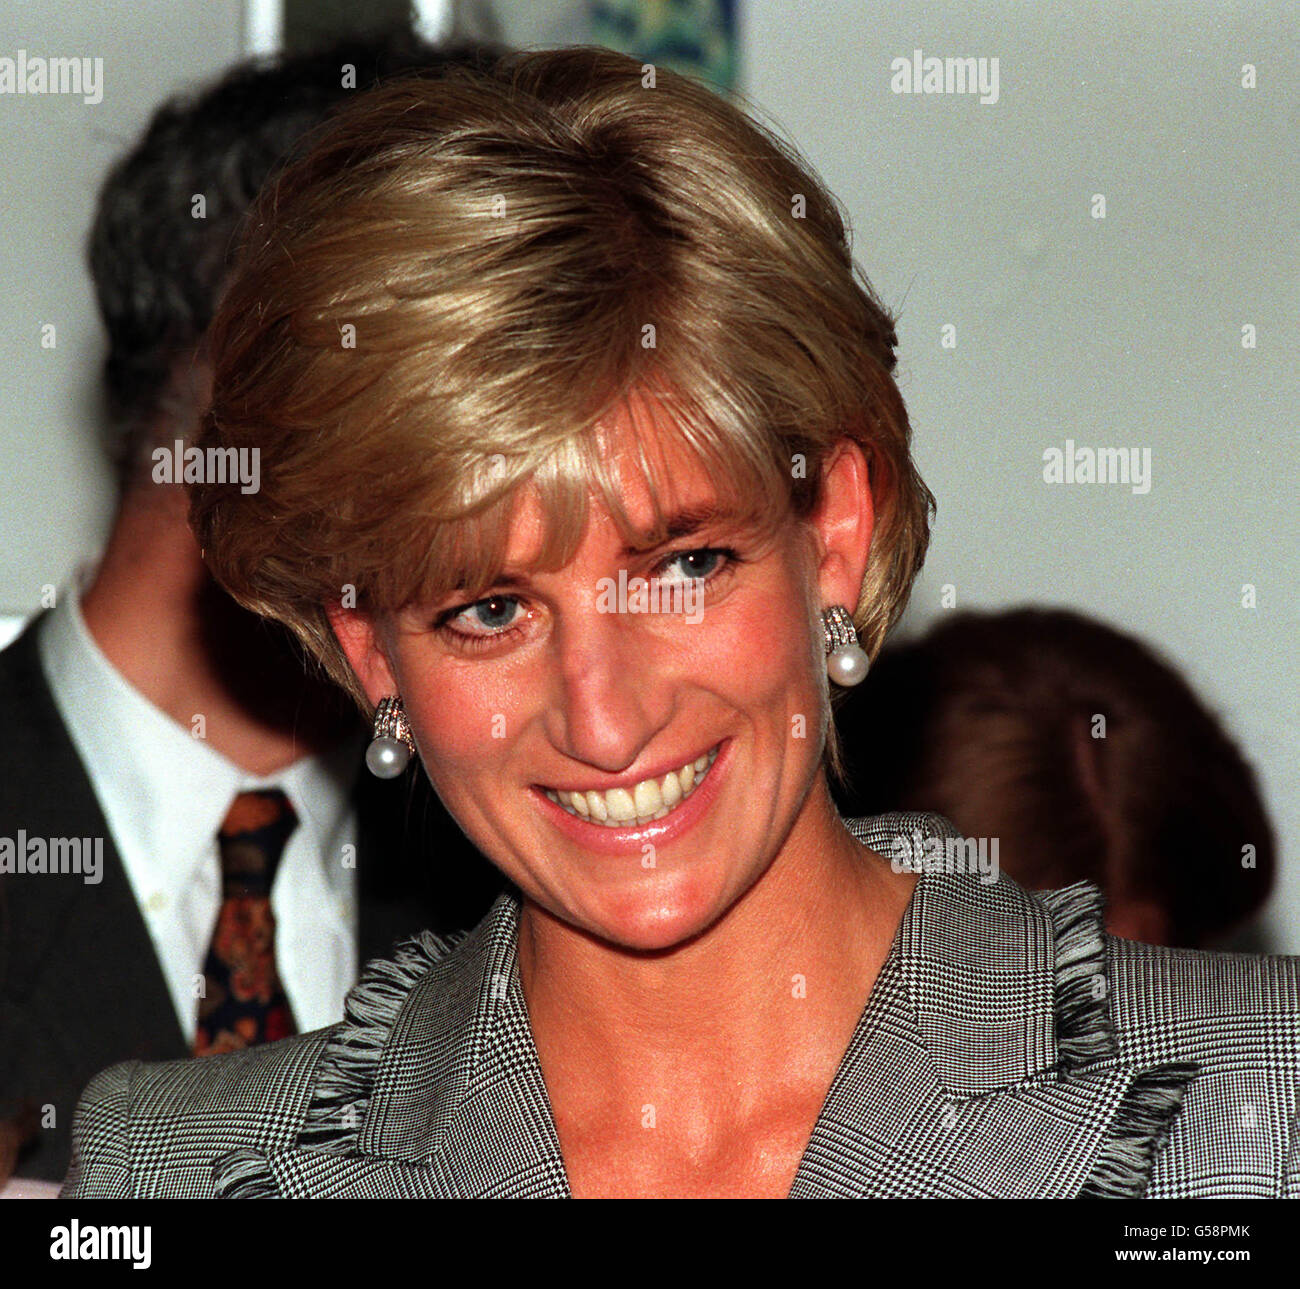 1997 : Diana, princesse de Galles, sourit lors de sa visite à l'hôpital pédiatrique St. Mary's, Londres. Banque D'Images